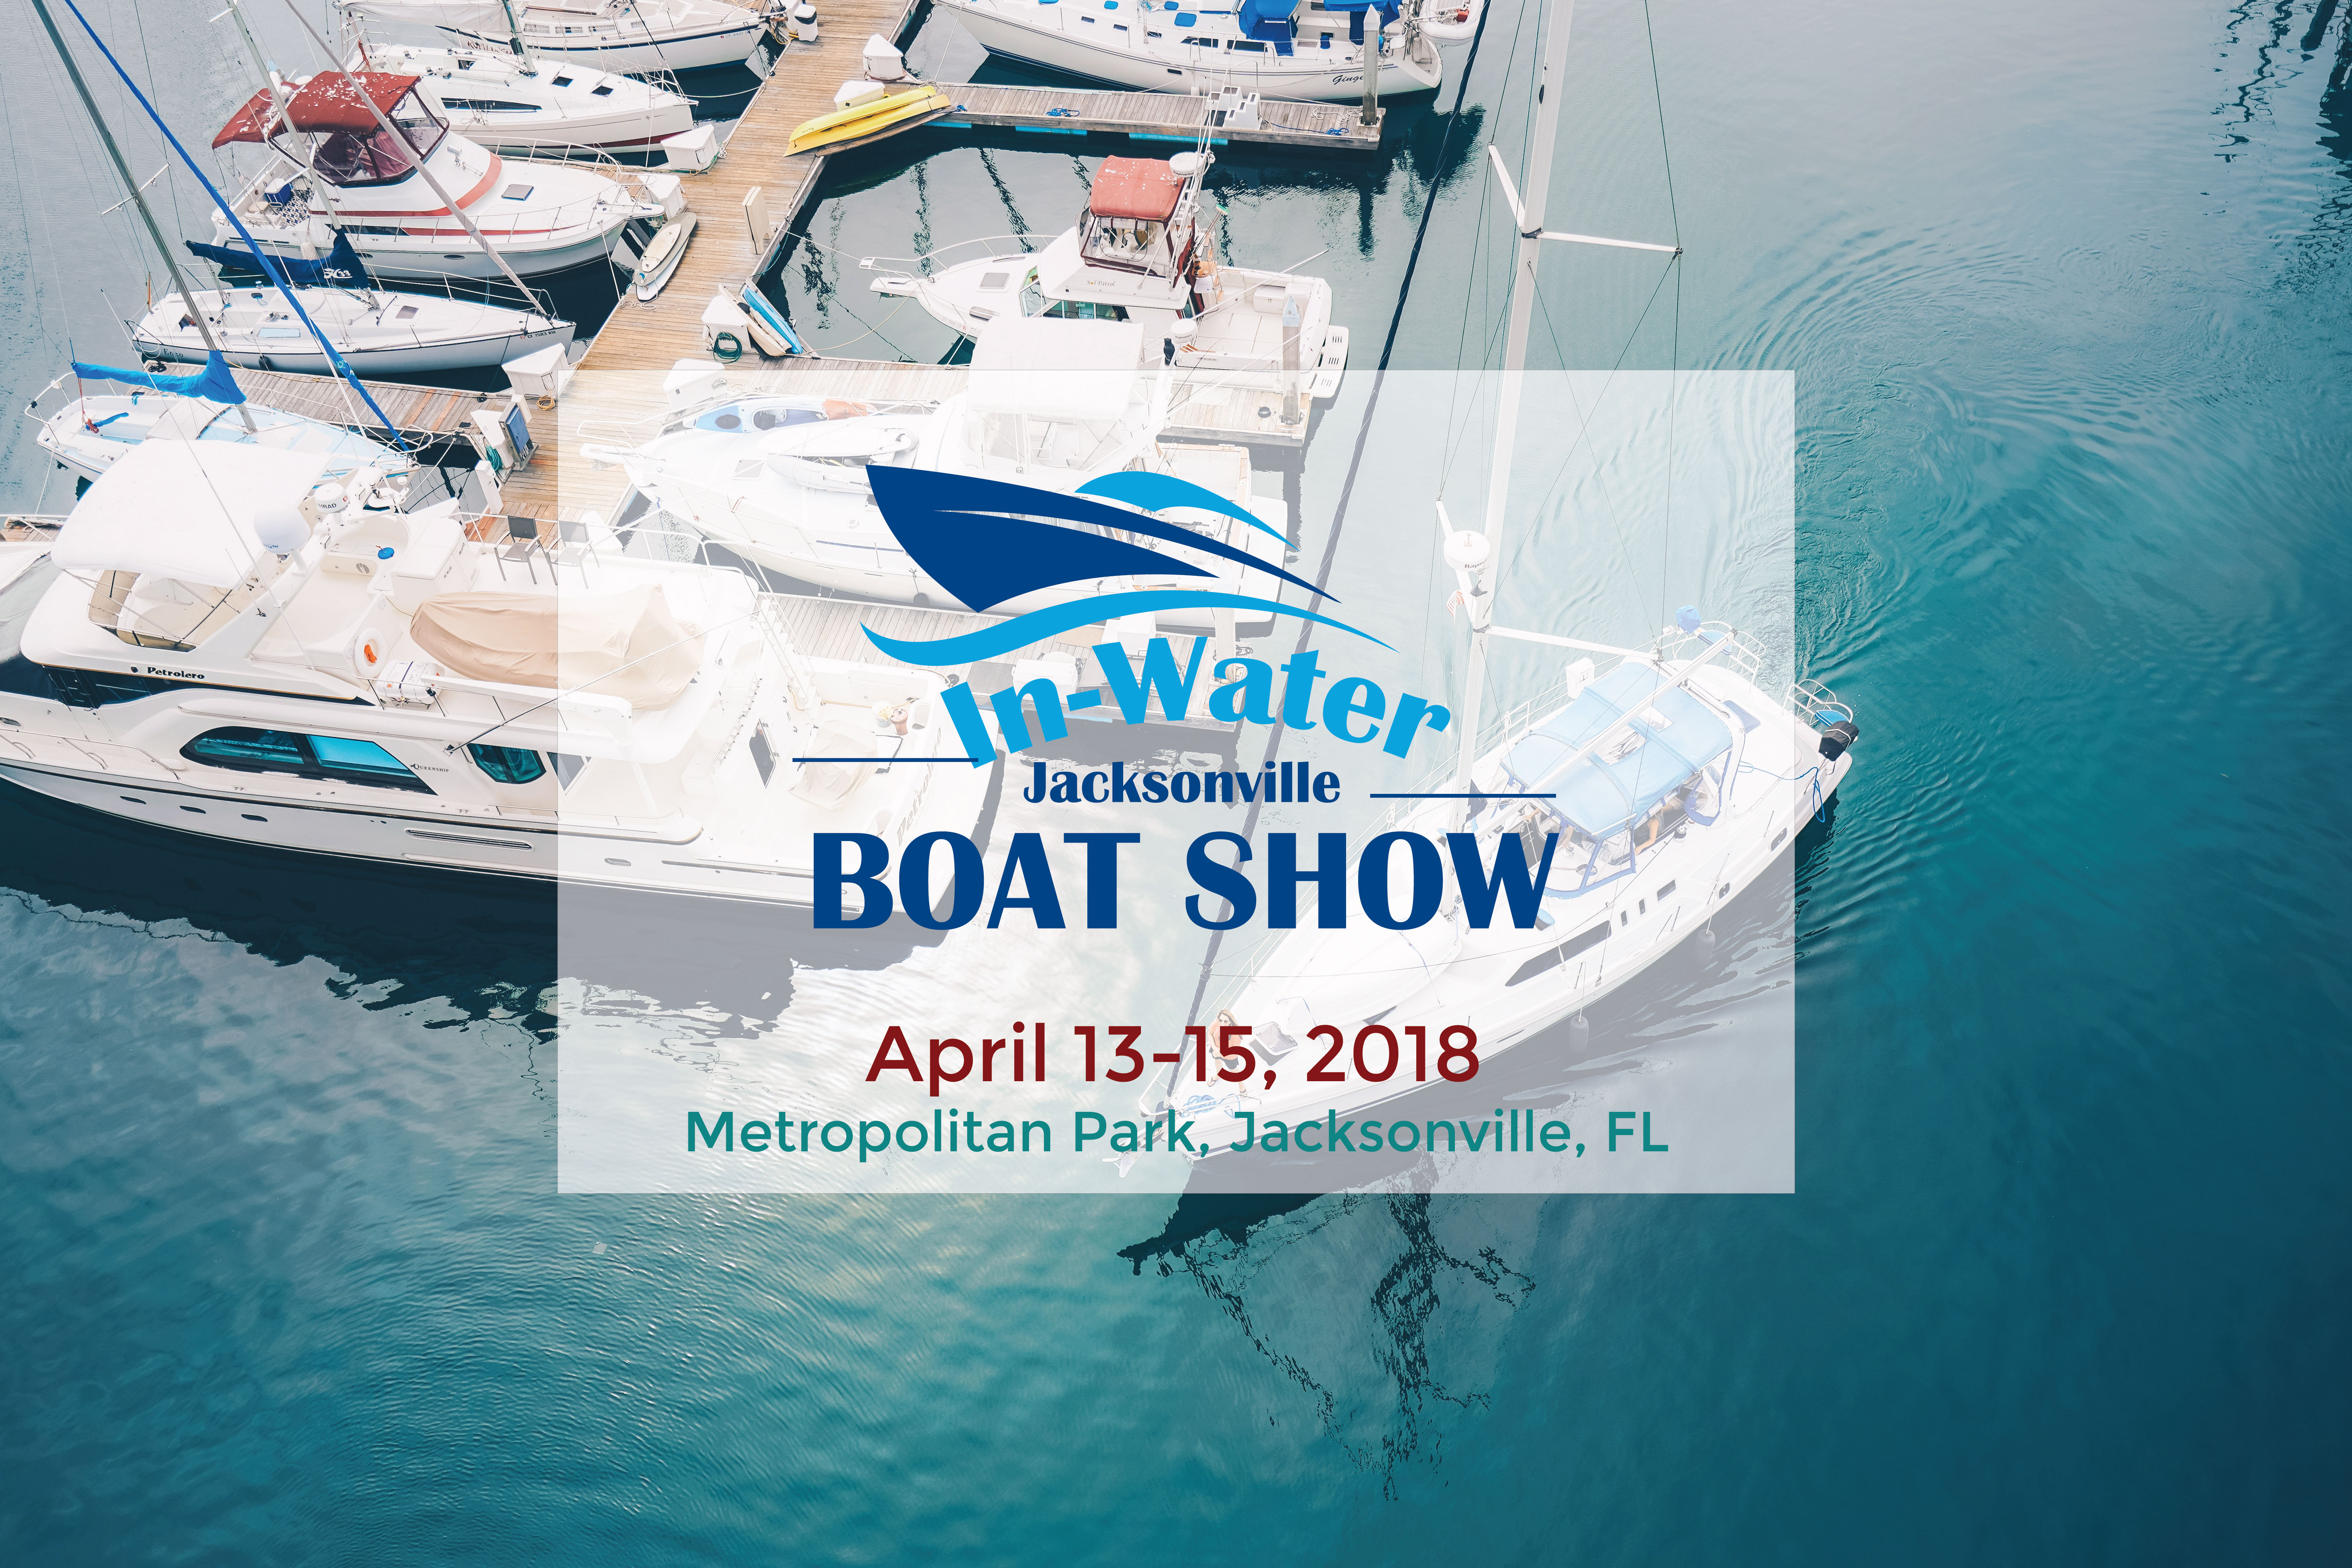 Jacksonville In Water Boat Show – April 13-15, 2018 in Jacksonville, FL